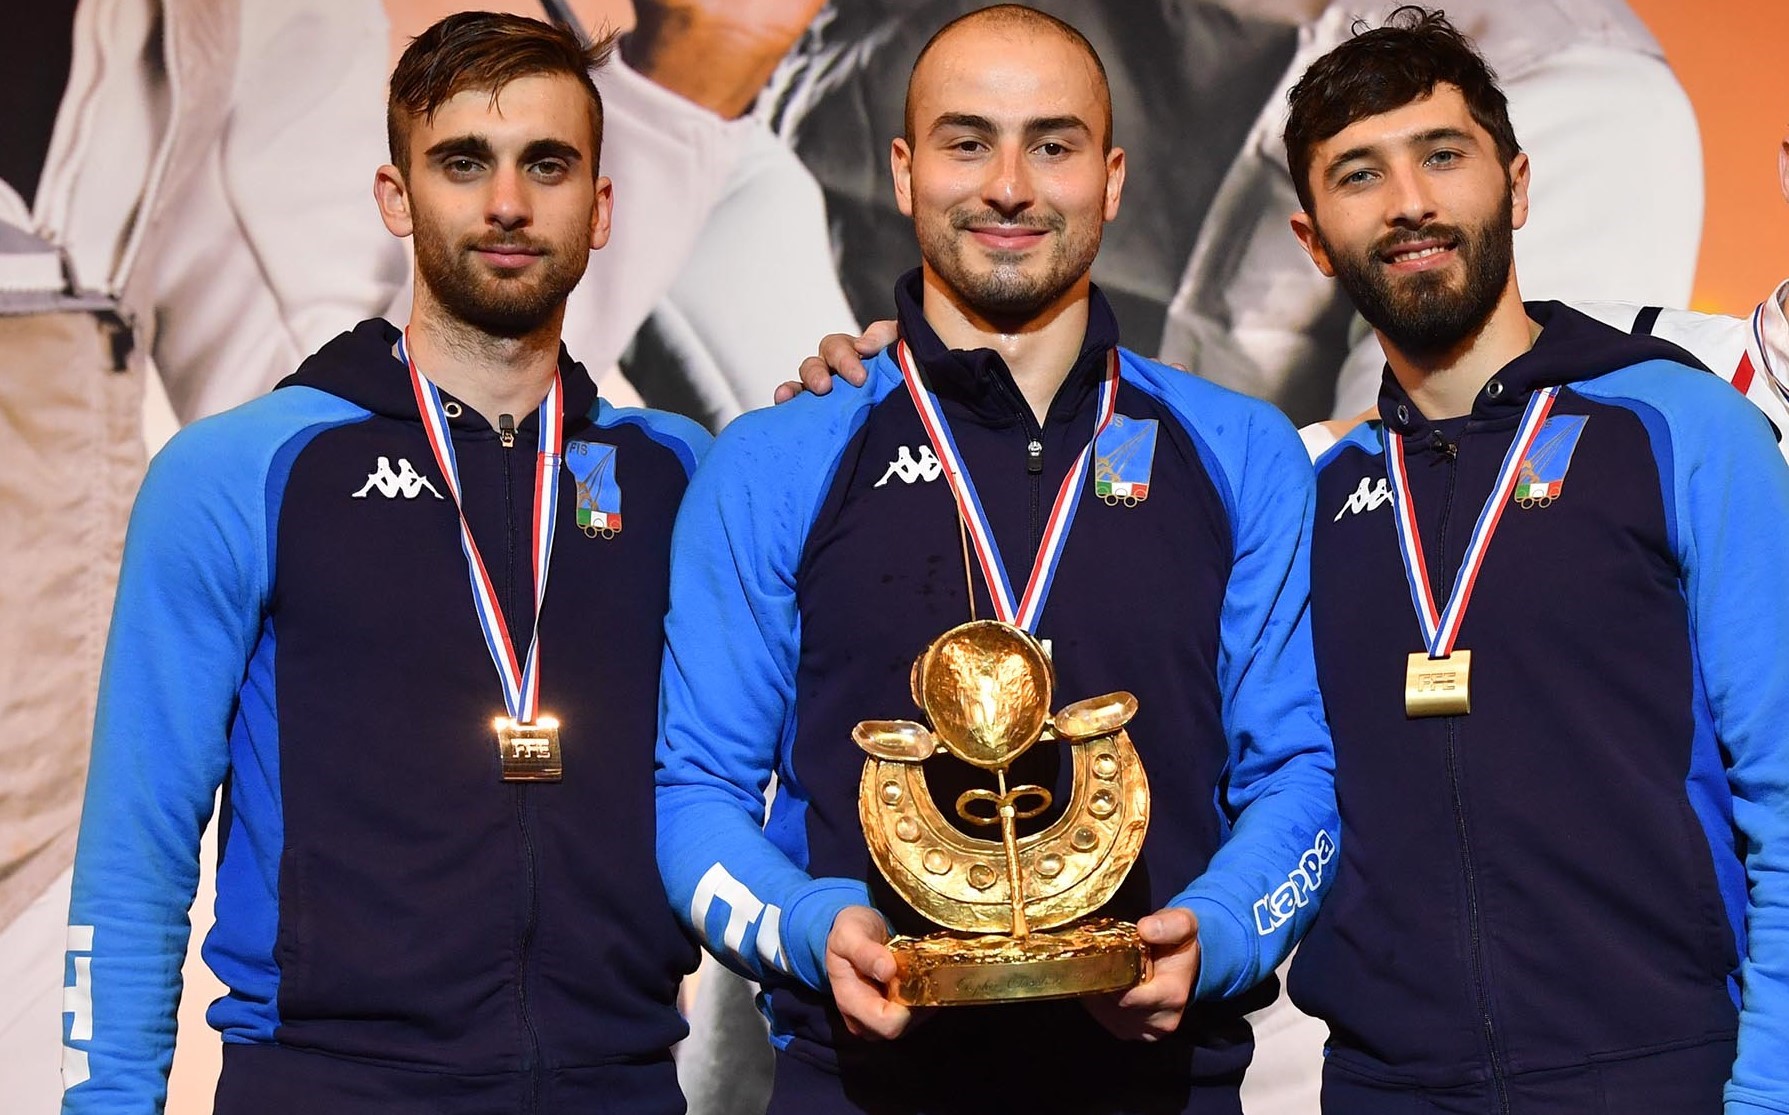 Scherma, Coppa del Mondo: tripletta azzurra a Parigi con Forconi, Garozzo e Avola